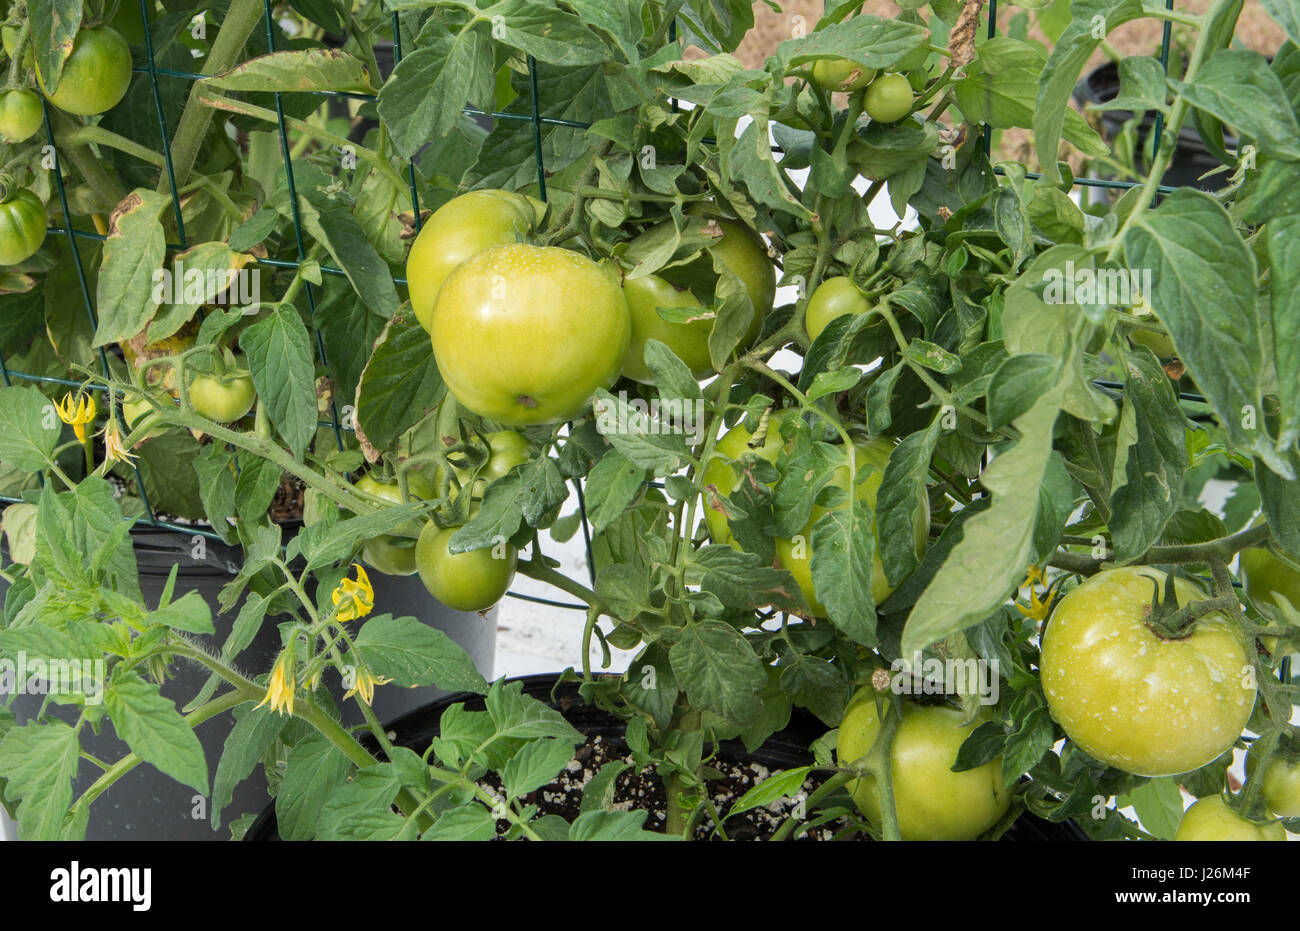 Orgánica de la Florida Central casa jardín con plantas de tomate y verduras en el patio para comer una dieta sana y cooperativa agraria Foto de stock